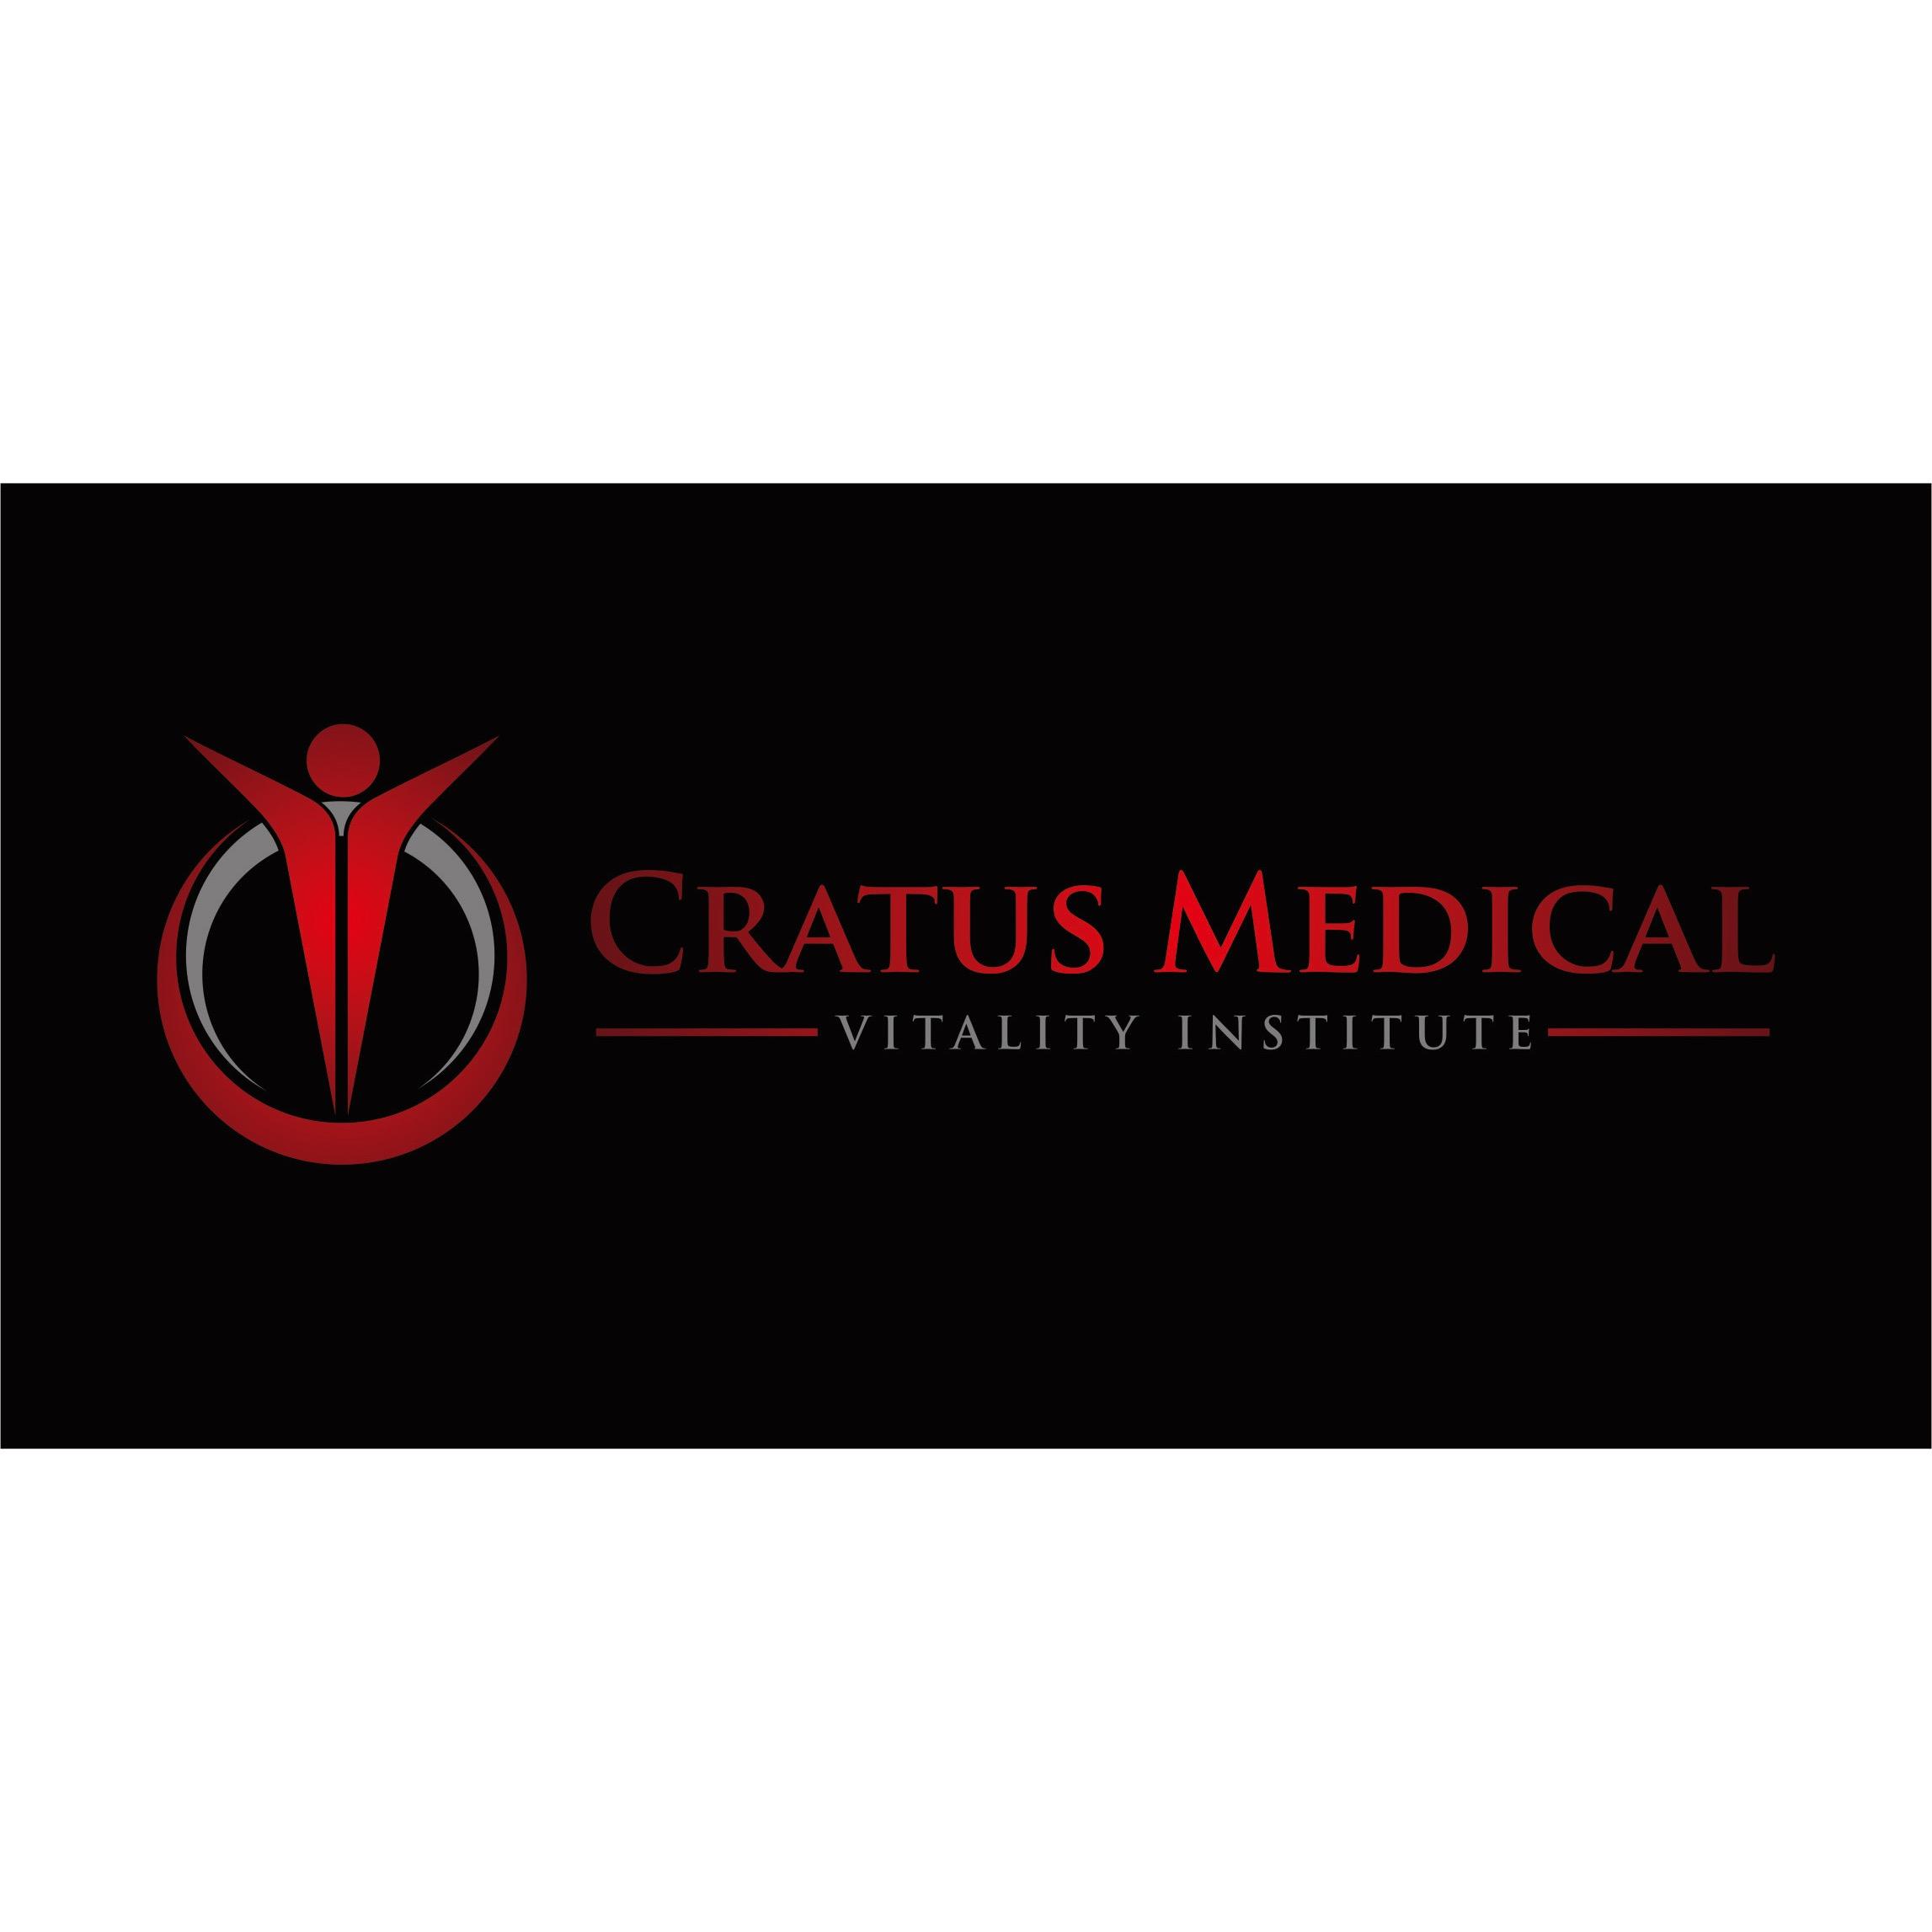 Cratus Medical Vitality Institute Logo